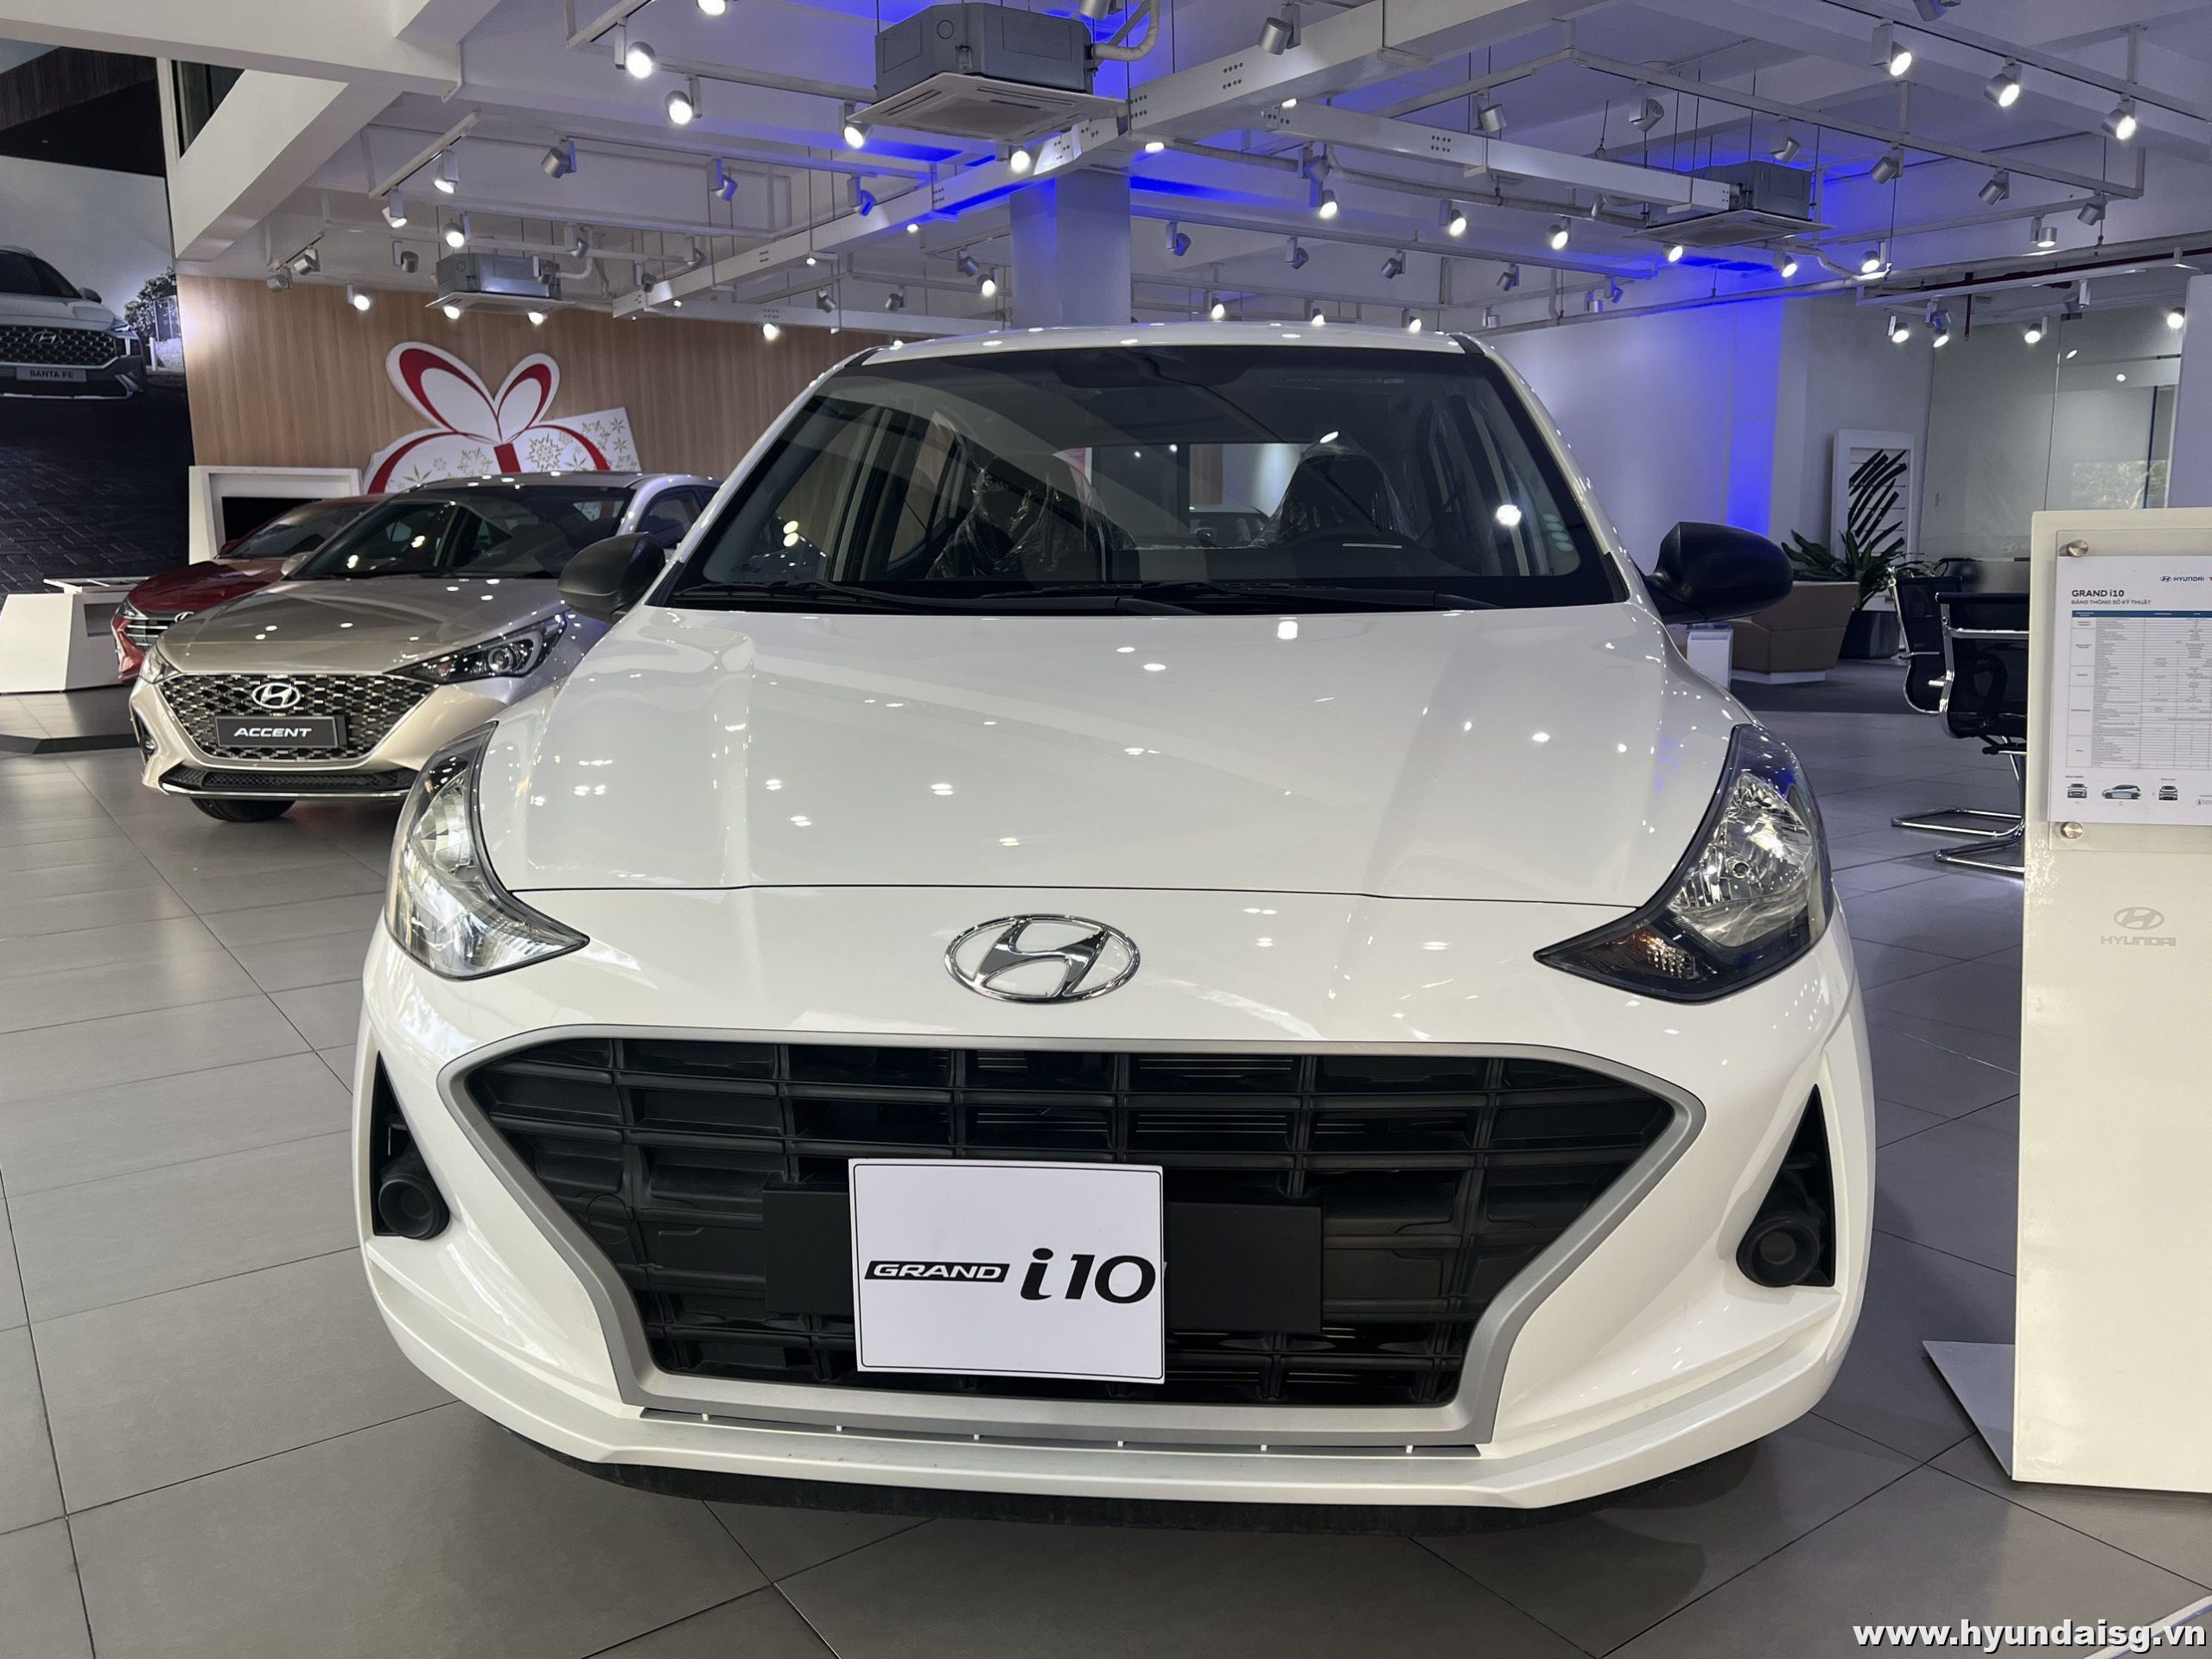 Hyundai i10 HB 2022 màu trắng là chiếc xe nhỏ gọn và đáng yêu nhất mà bạn không nên bỏ qua. Với thiết kế thông minh, tiện ích và tiết kiệm nhiên liệu, chiếc xe này sẽ giúp bạn di chuyển một cách tự tin và an toàn. Hãy xem hình ảnh này và khám phá vẻ đẹp tinh tế của chiếc xe nhỏ xinh này.